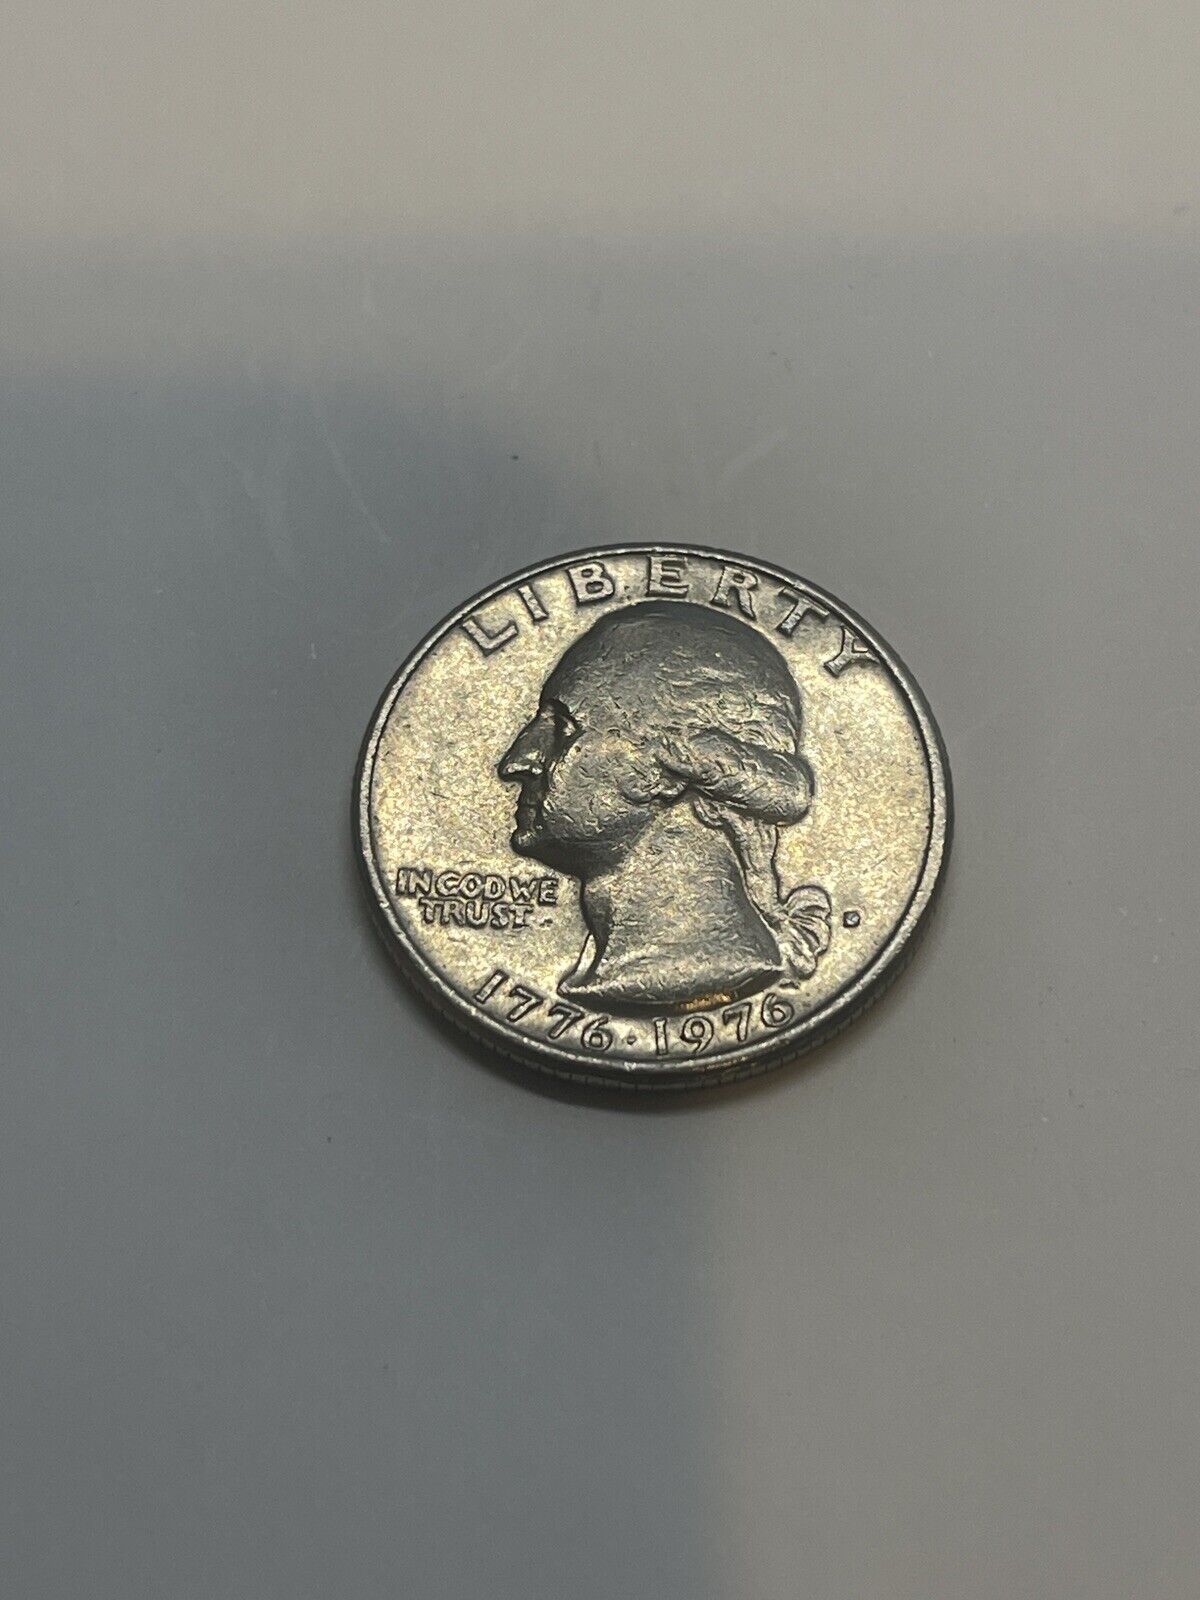 1776-1976 D US Bicentennial Quarter, Filled Mint Mark